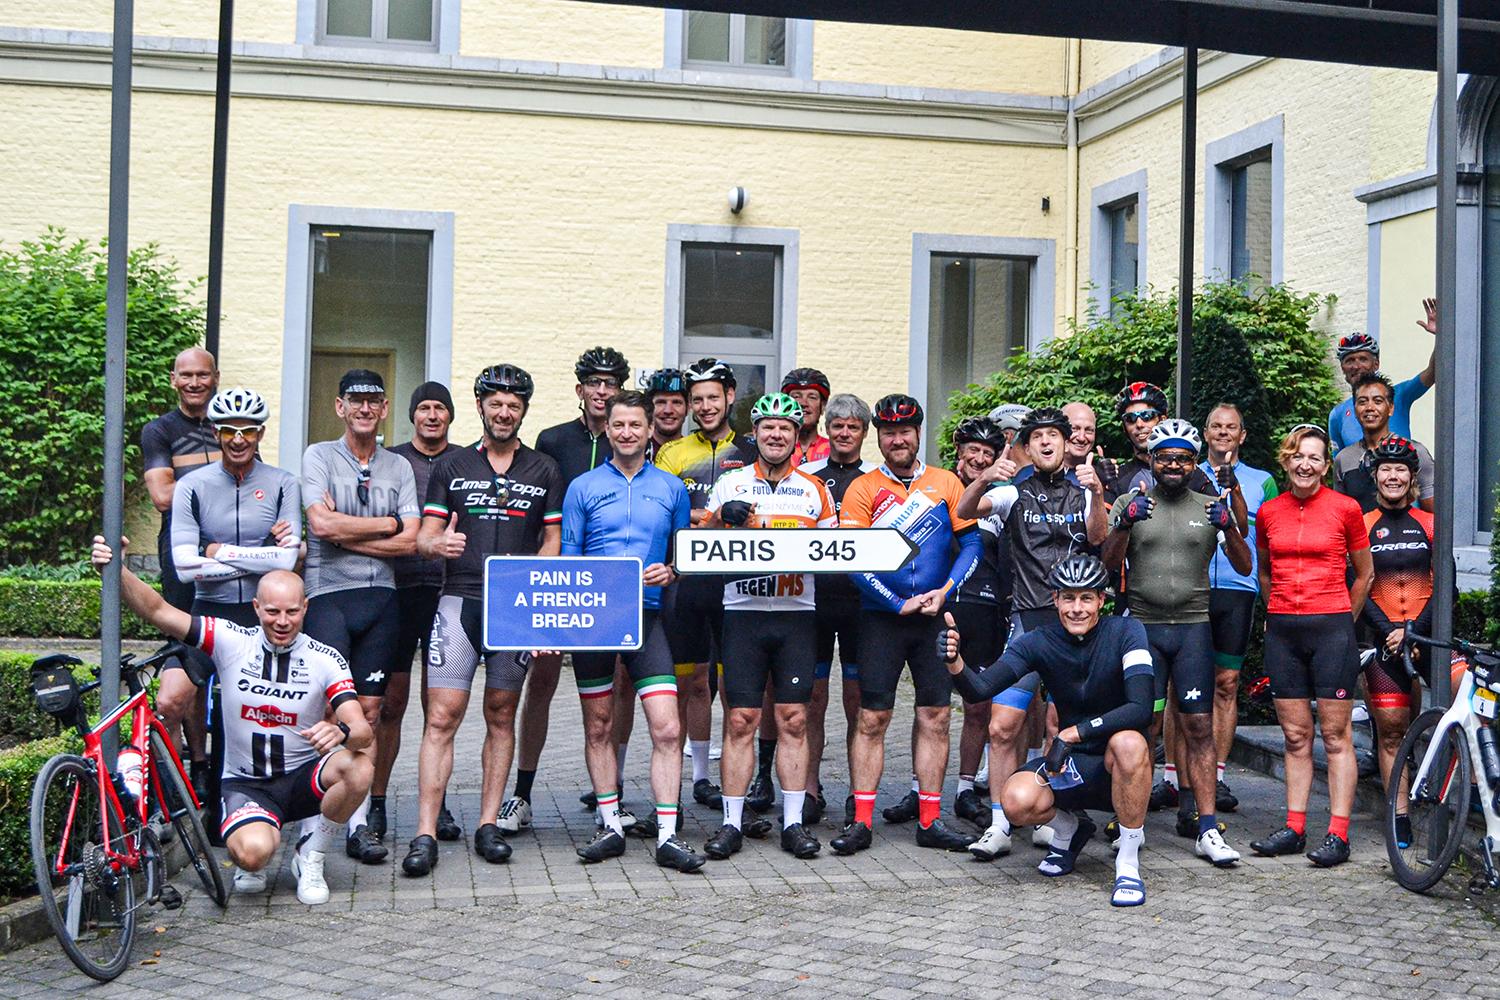 Fietsers nemen groepsfoto voordat ze verder fietsen vanuit Dinant naar Parijs